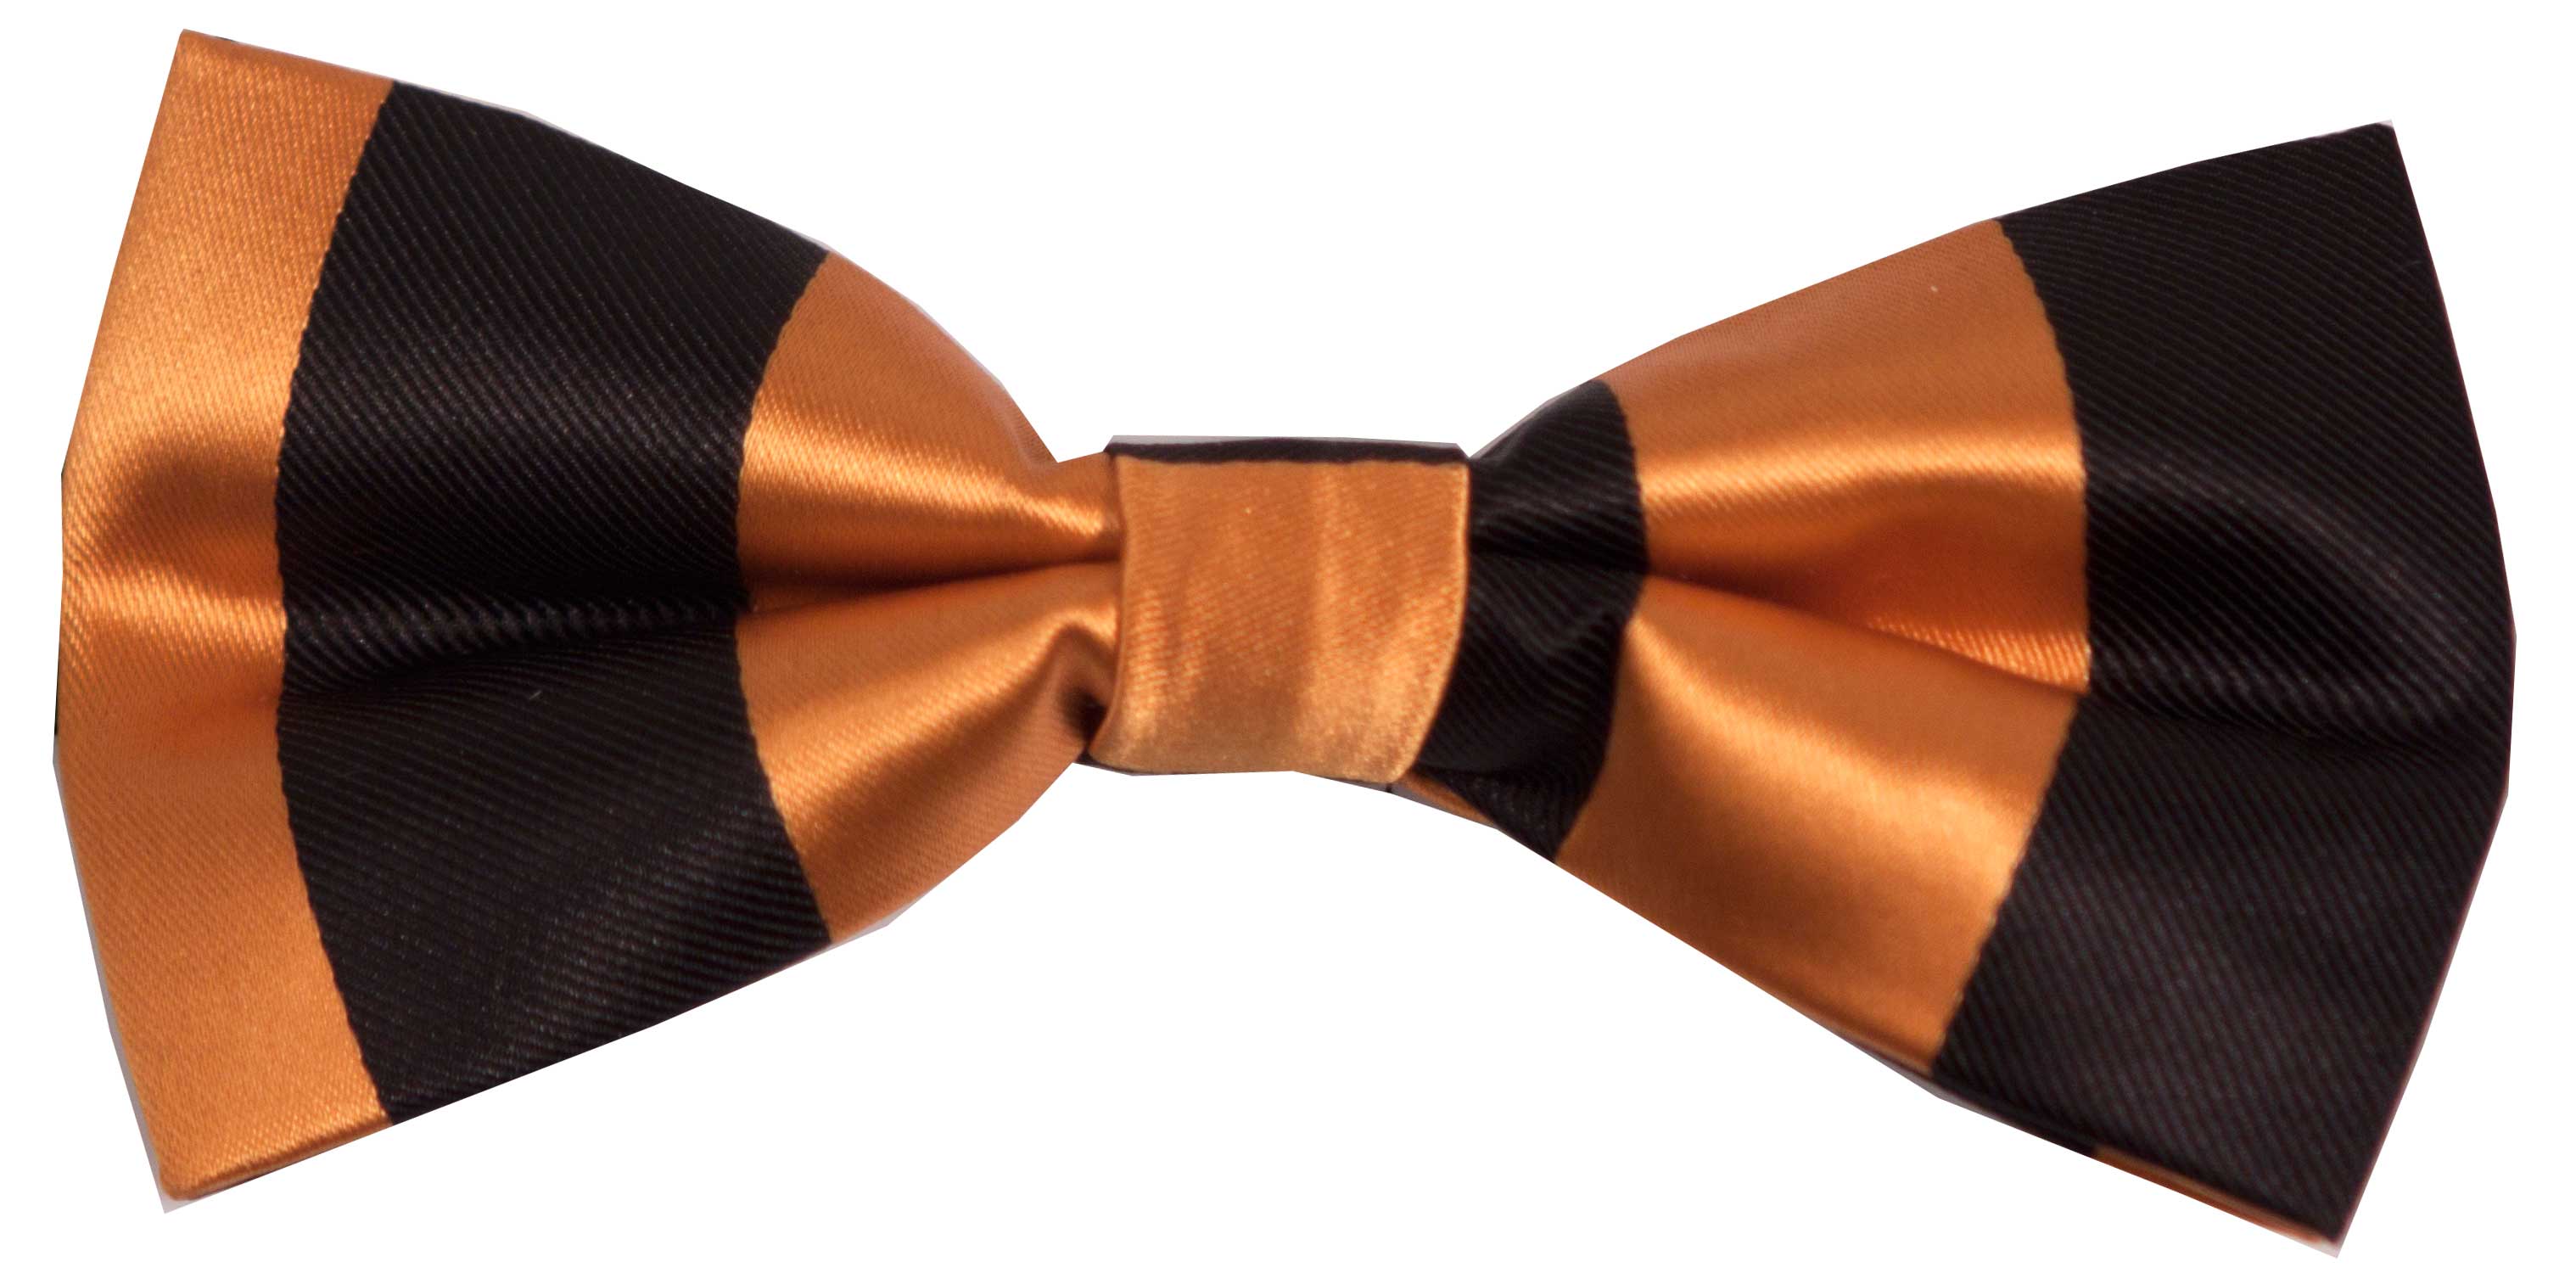 Bow tie (black and orange)